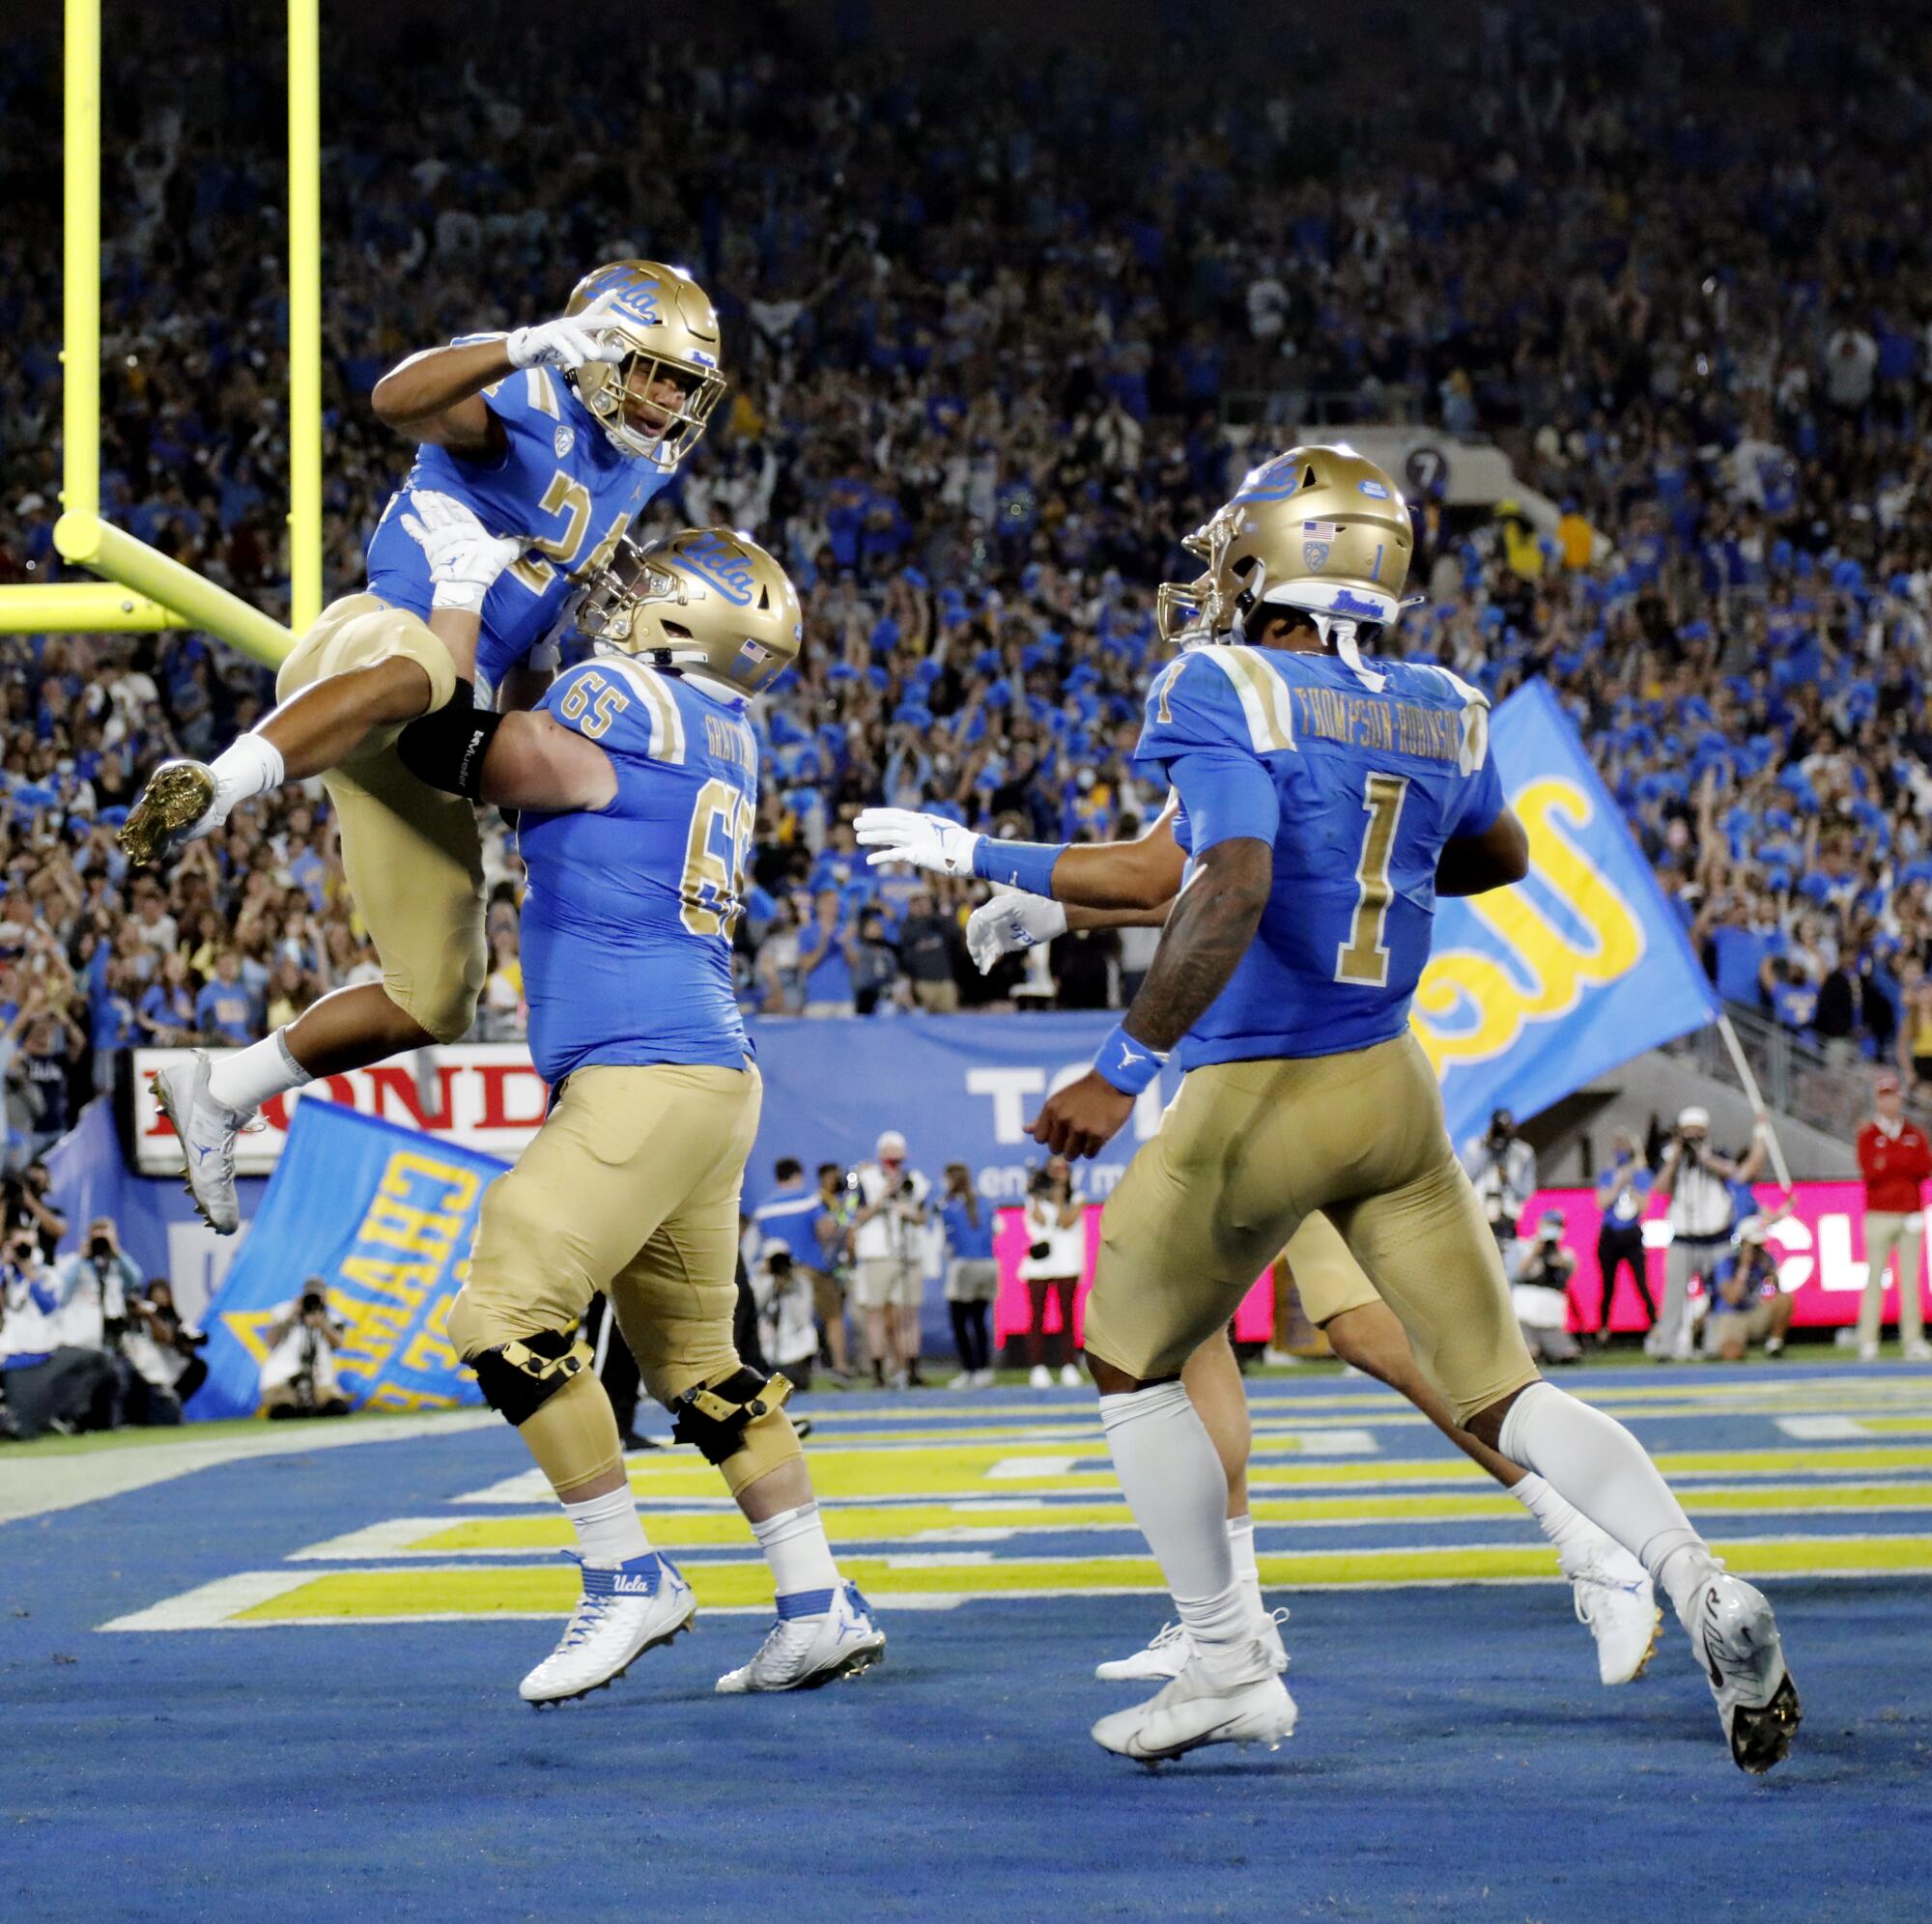  UCLA's Paul Grattan  lifts up running back Zach Charbonnet after a touchdown.